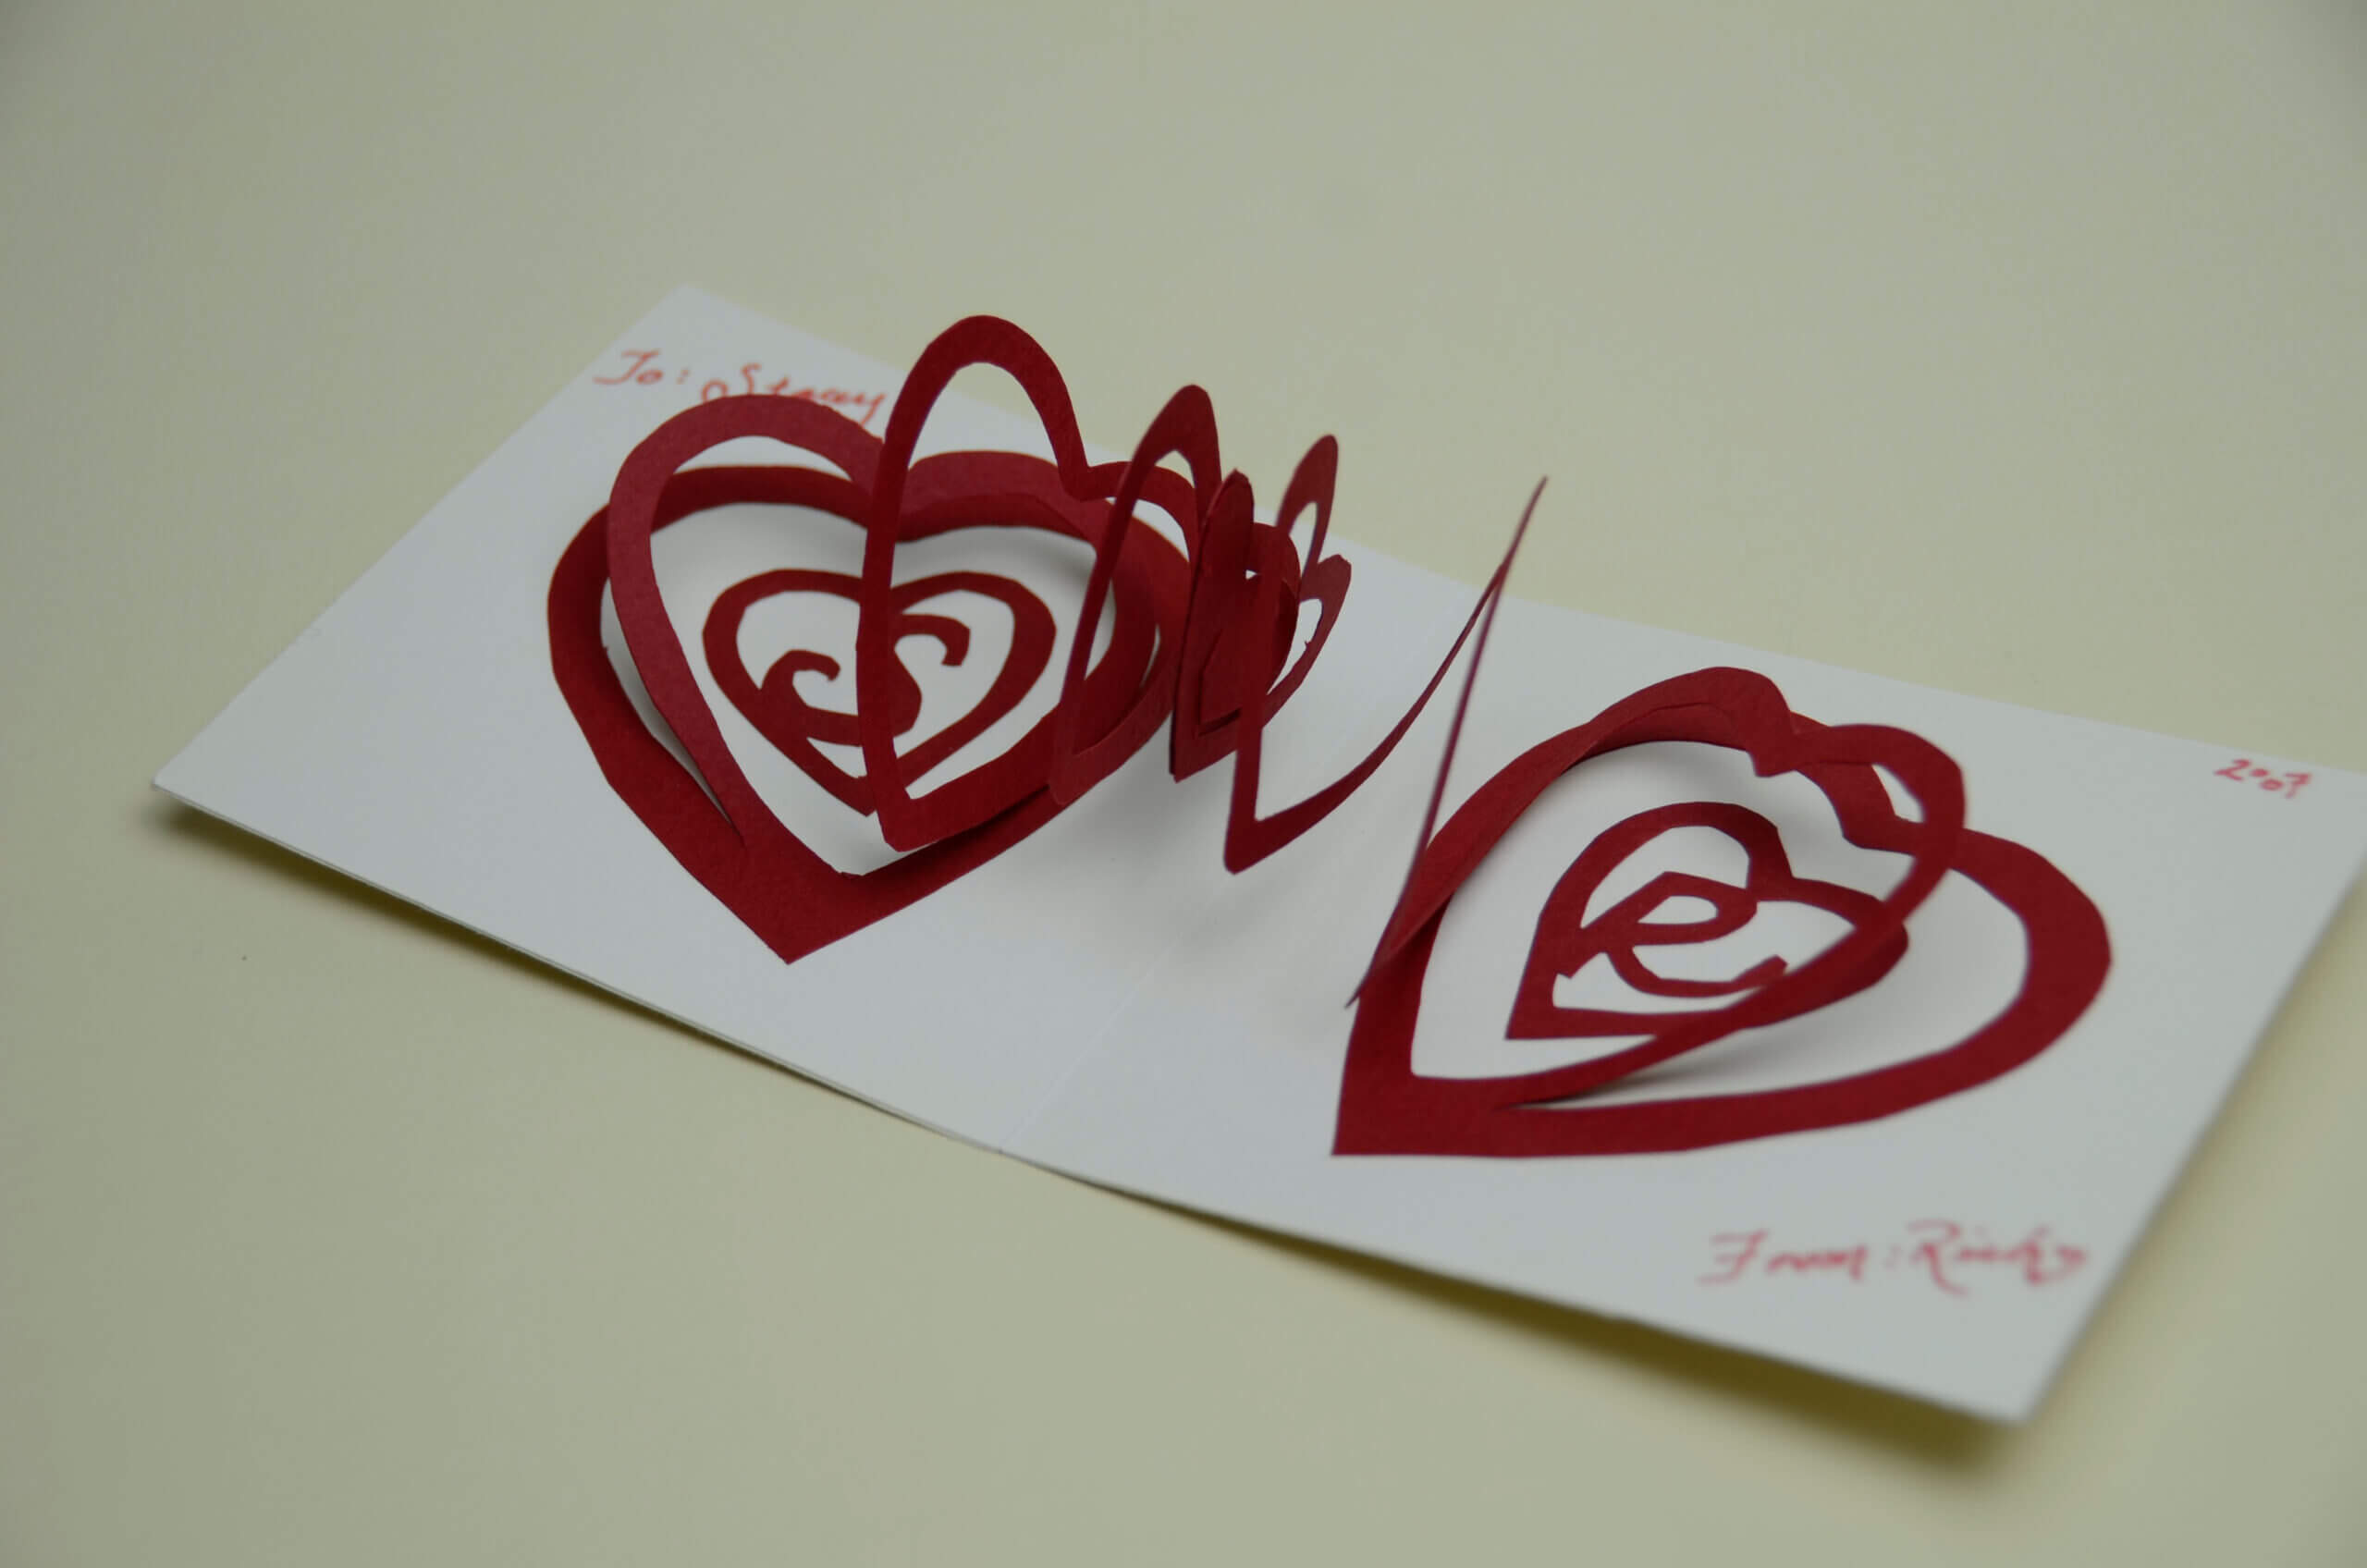 3D Heart Valentine's Card Pop Up Card Heart Inside Pop Out Heart Card Template